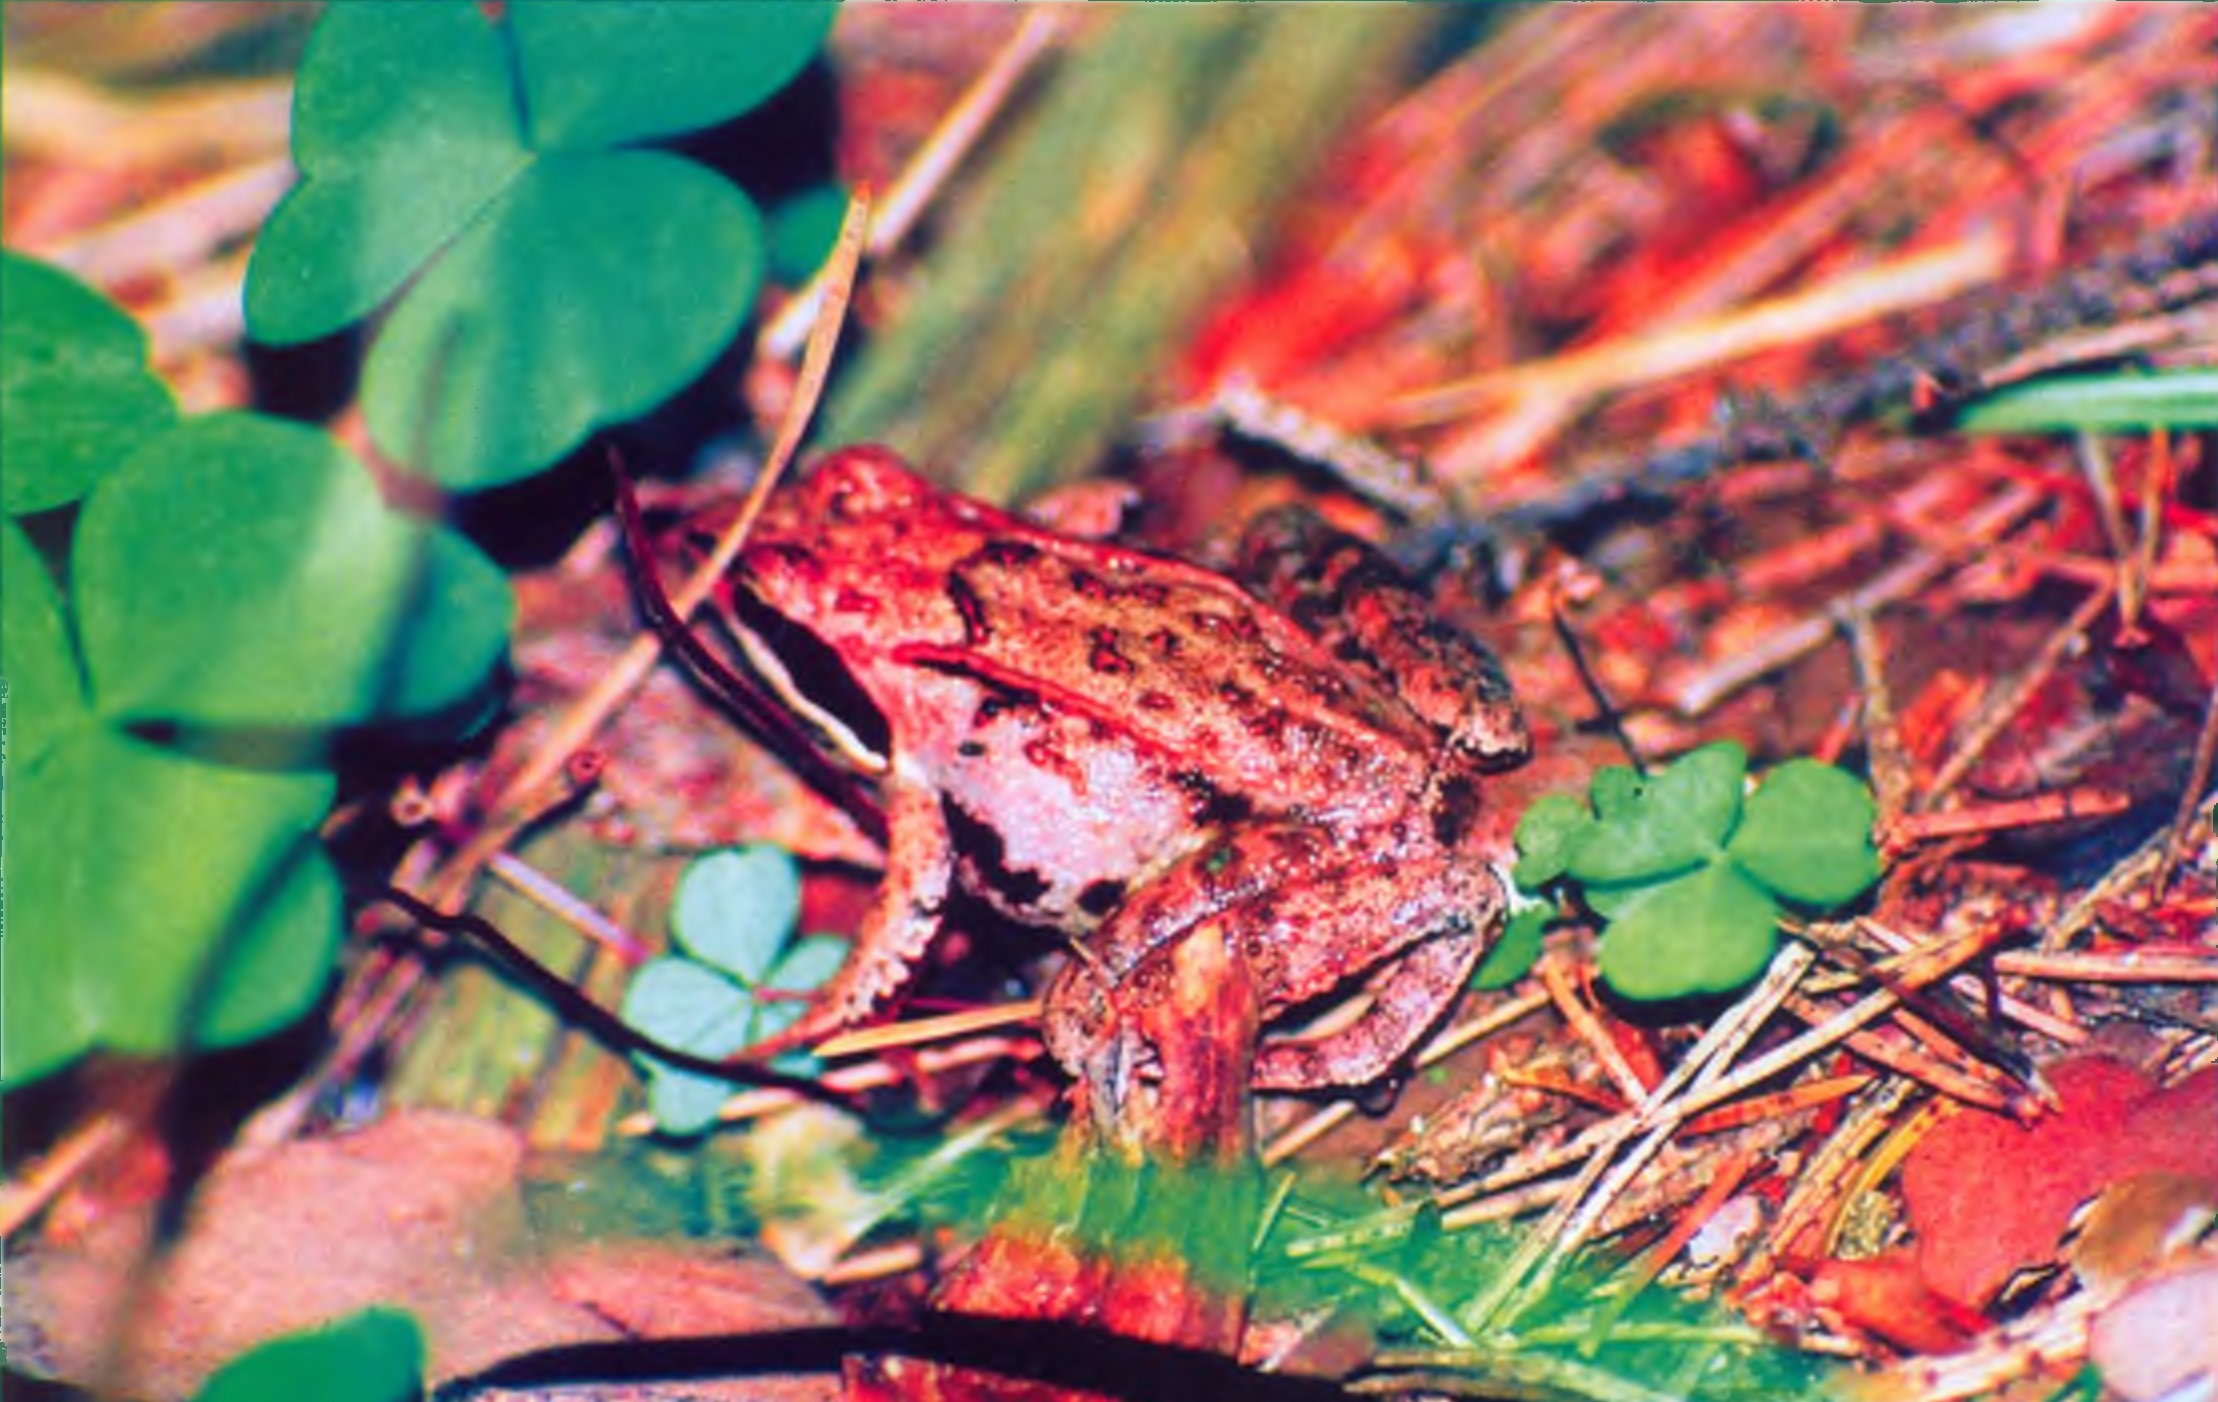 Остромордые лягушки так многочисленны на территории Раифского участка, что в буквальном смысле слова ходят по ногам (Фото В. Боброва).